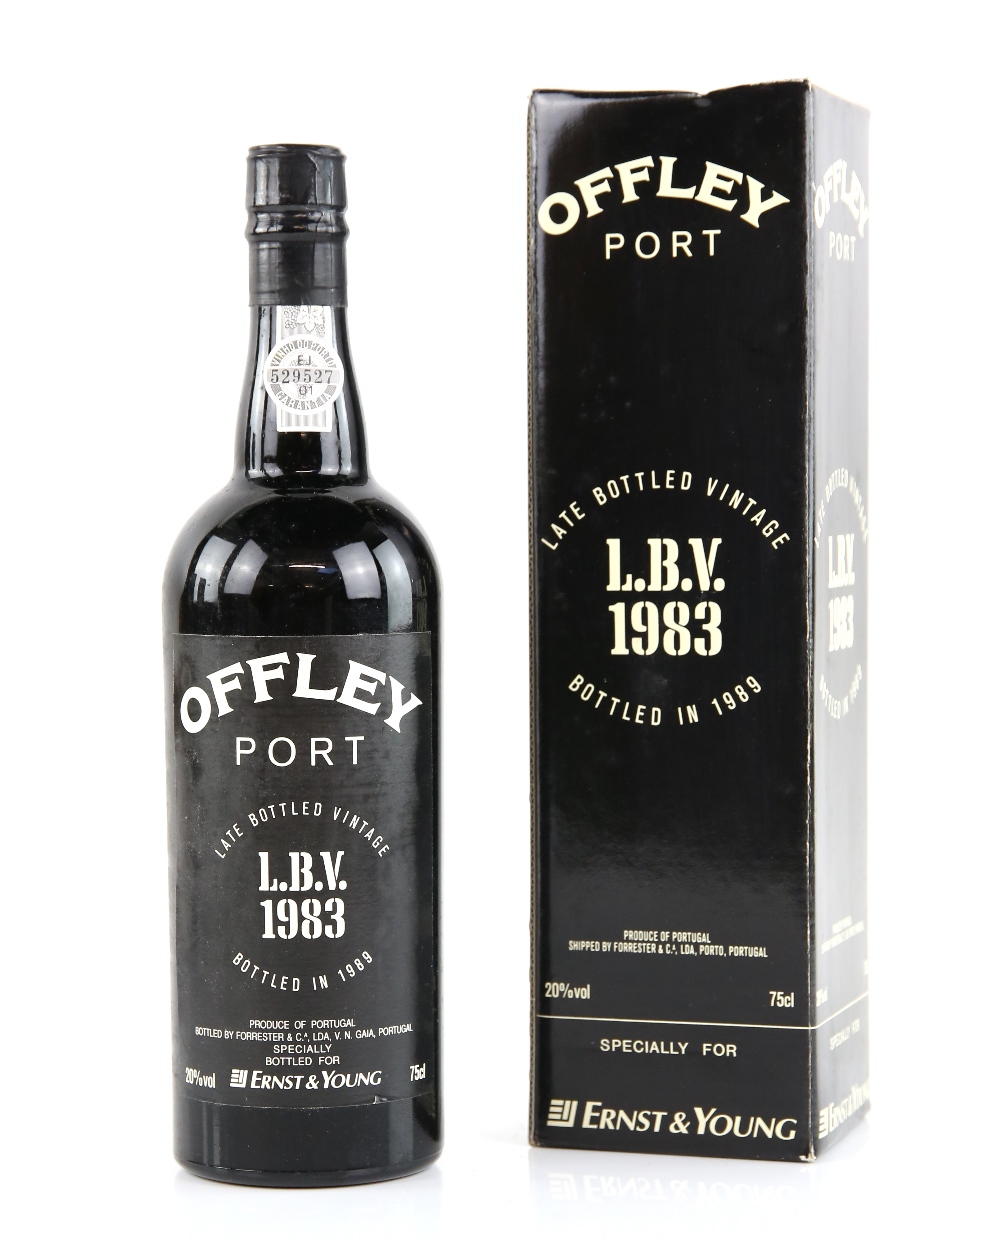 Four bottles of Offley Port Late Bottled Vintage, 1983 vintage, bottled in 1989, specially for Ernst - Image 2 of 2